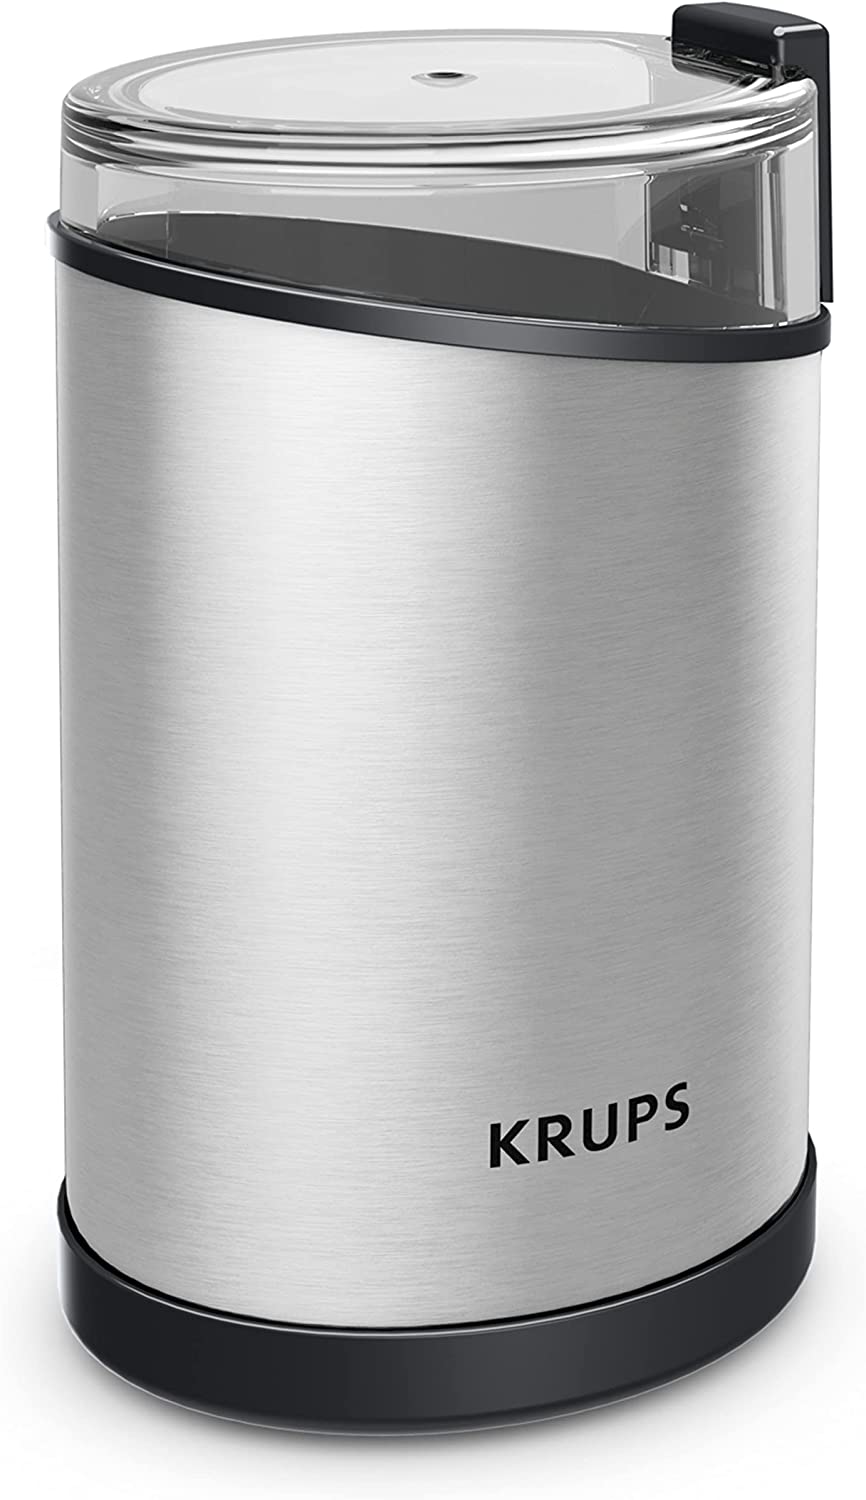 Krups Coffee Blade Grinders